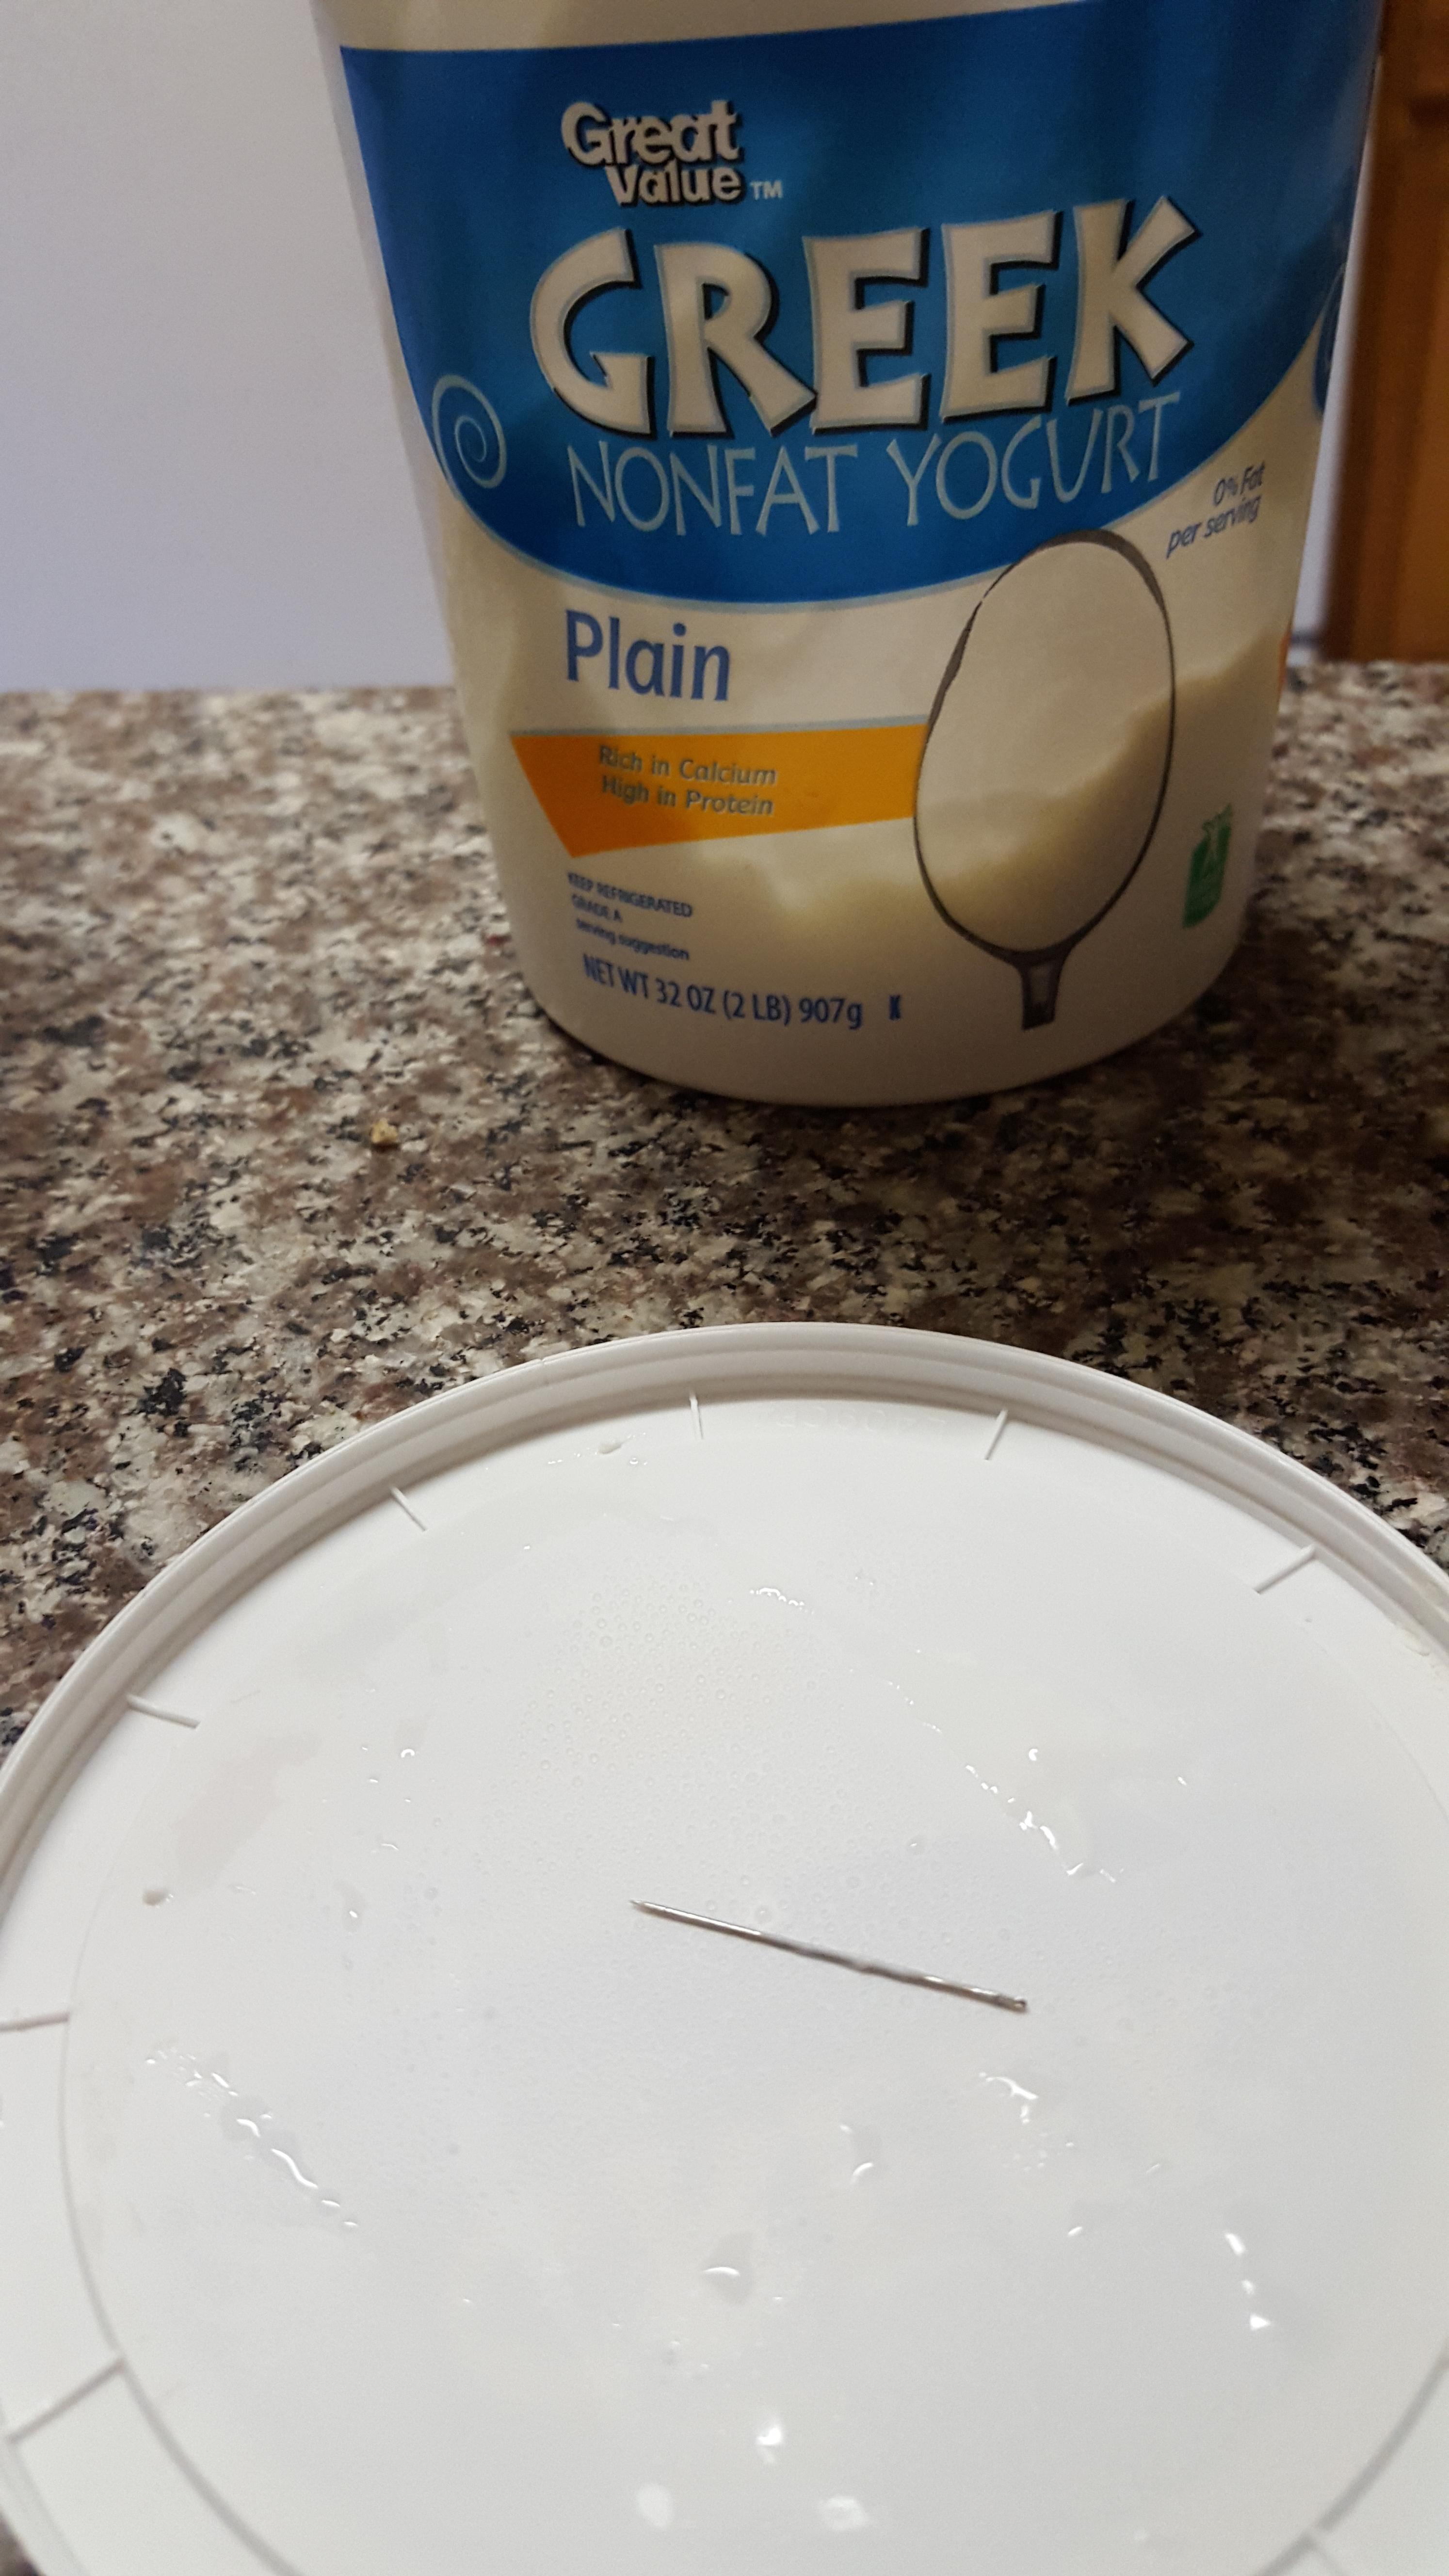 Someone found a needle in their yogurt.